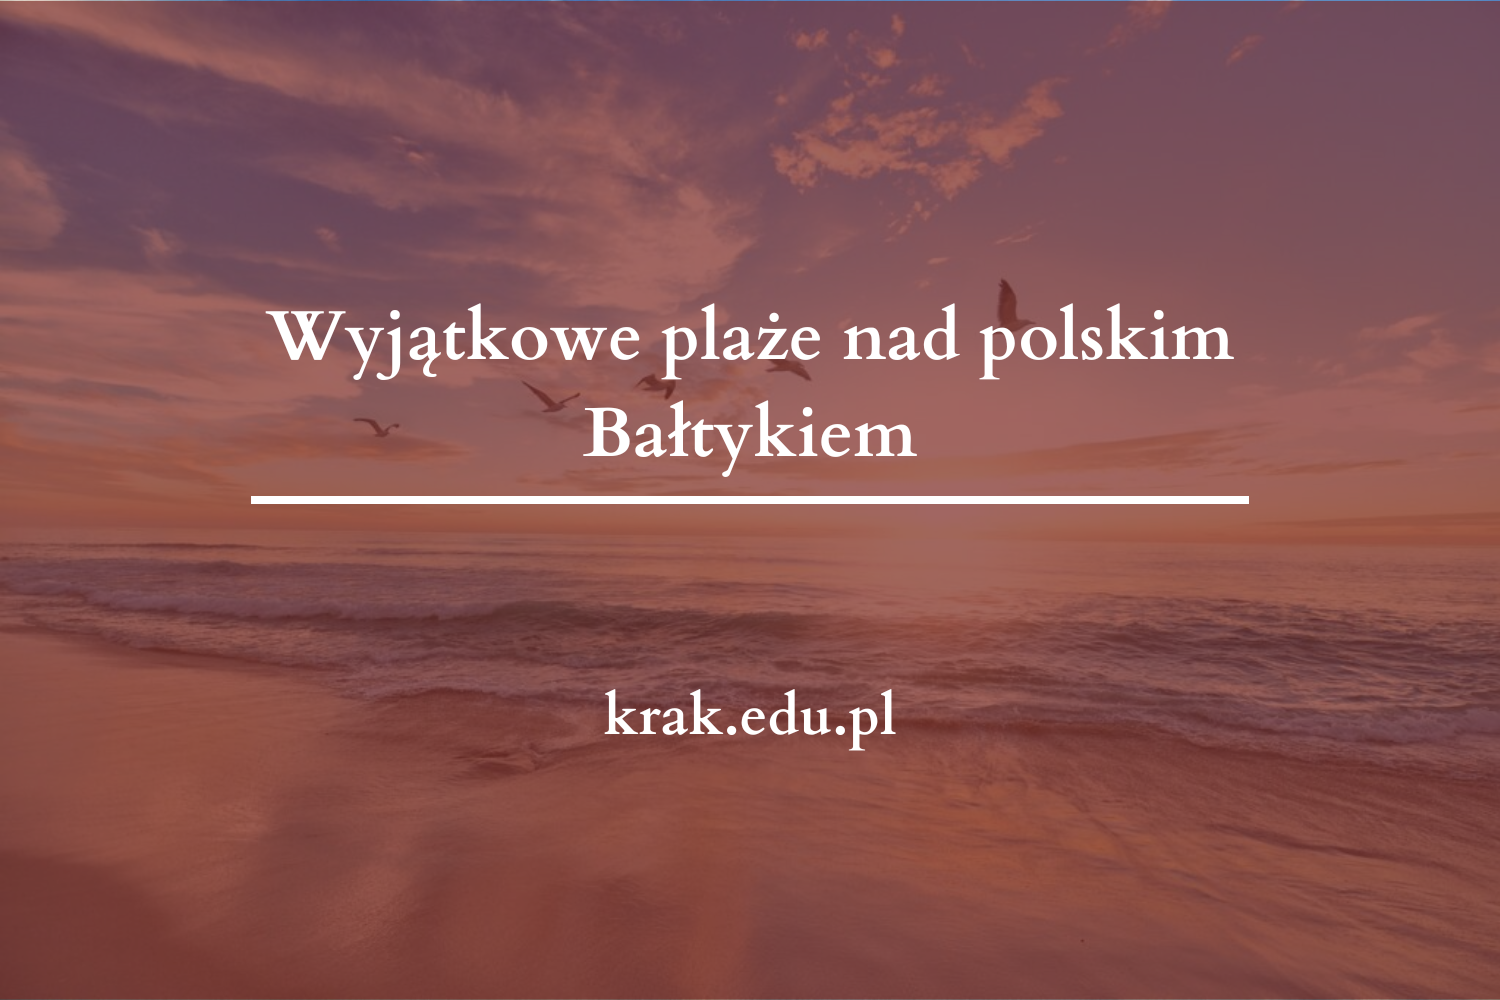 Wyjątkowe plaże nad polskim Bałtykiem